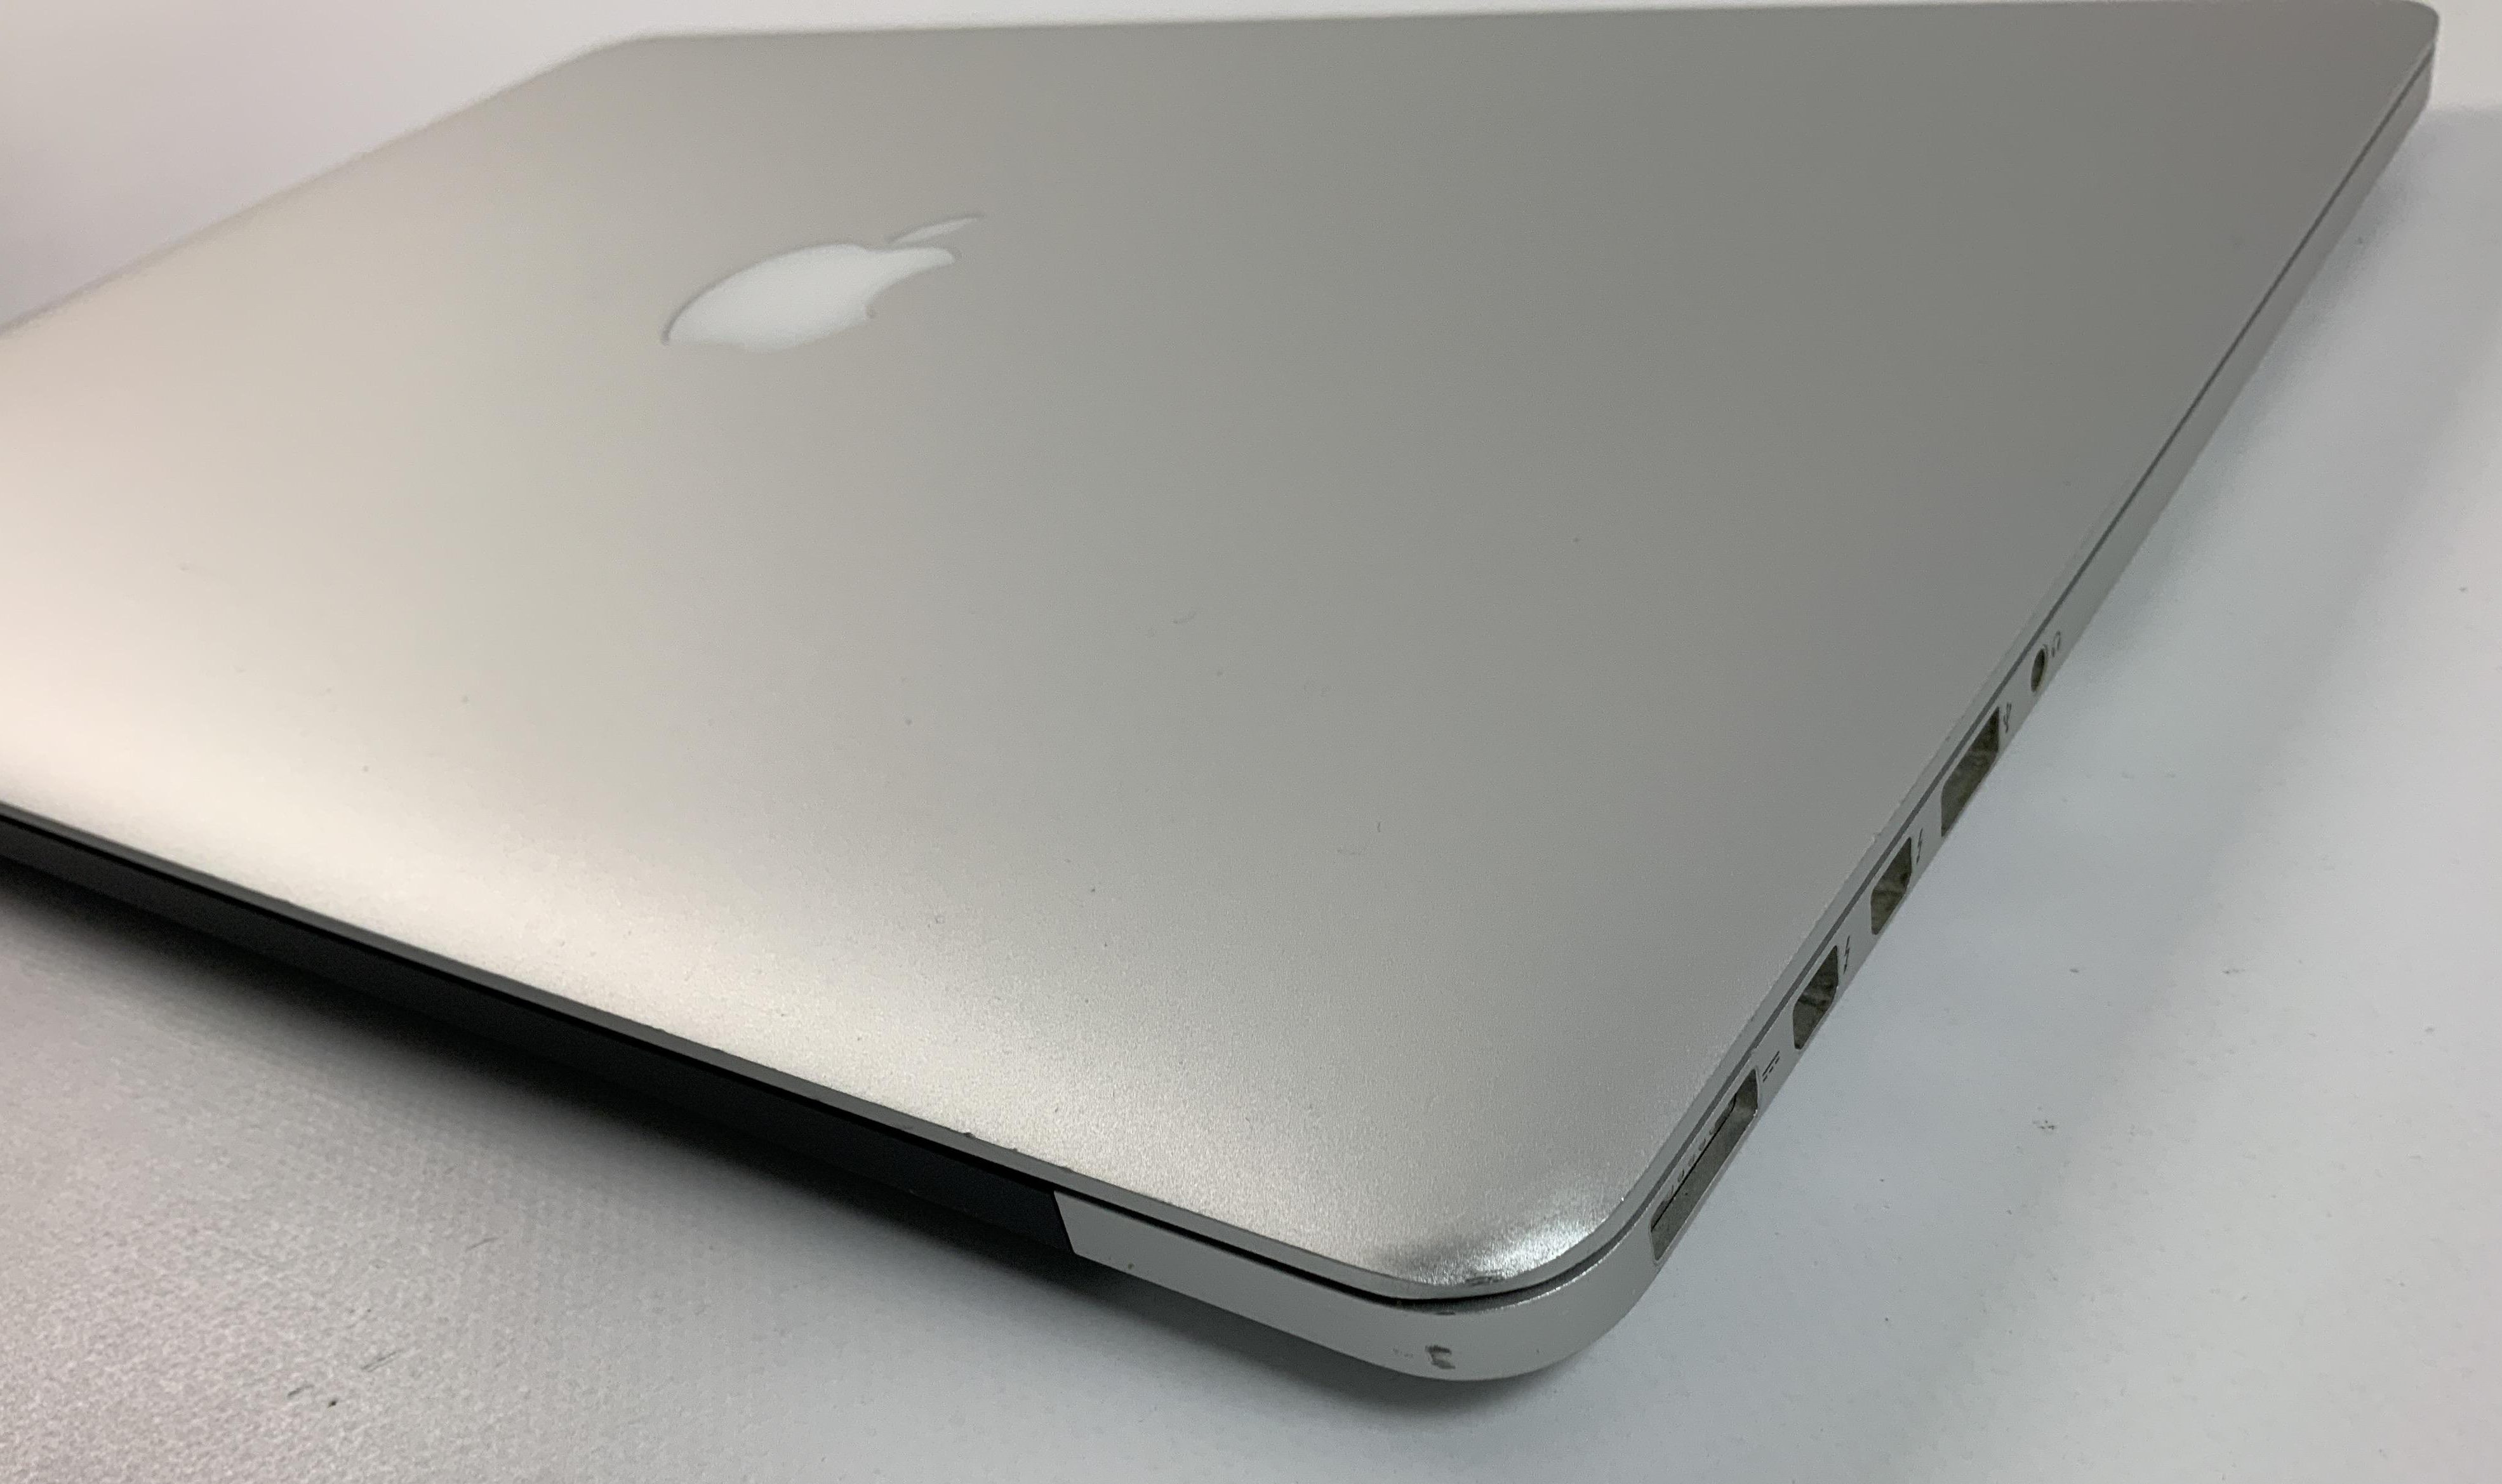 MacBook Pro Retina 15" Mid 2014 (Intel Quad-Core i7 2.2 GHz 16 GB RAM 256 GB SSD), Intel Quad-Core i7 2.2 GHz, 16 GB RAM, 256 GB SSD, Kuva 5